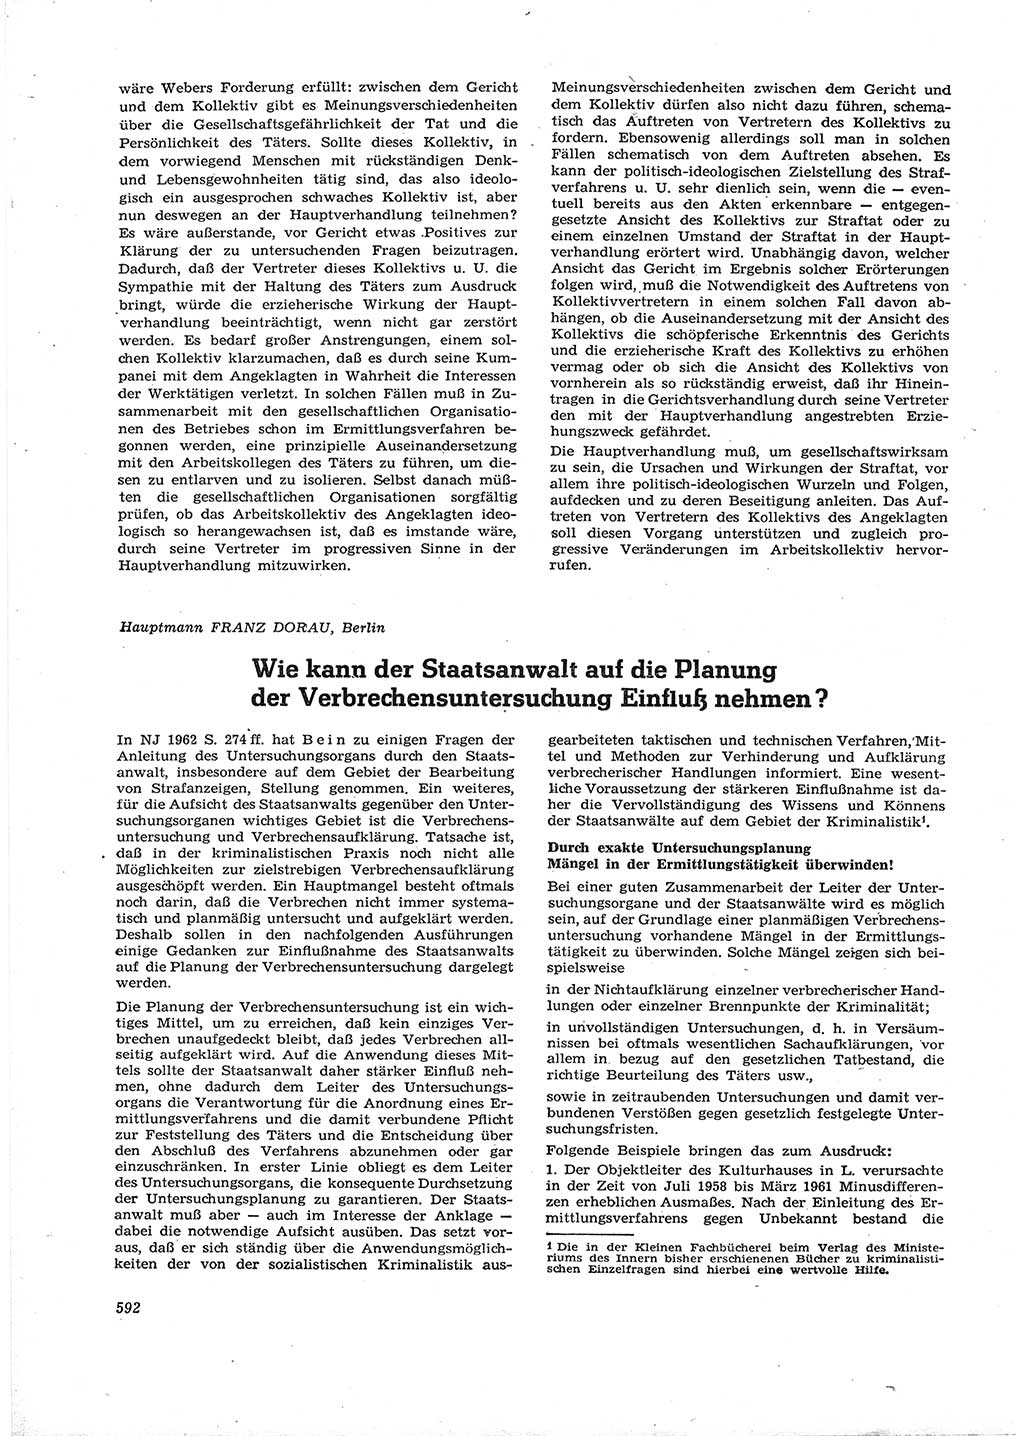 Neue Justiz (NJ), Zeitschrift für Recht und Rechtswissenschaft [Deutsche Demokratische Republik (DDR)], 16. Jahrgang 1962, Seite 592 (NJ DDR 1962, S. 592)